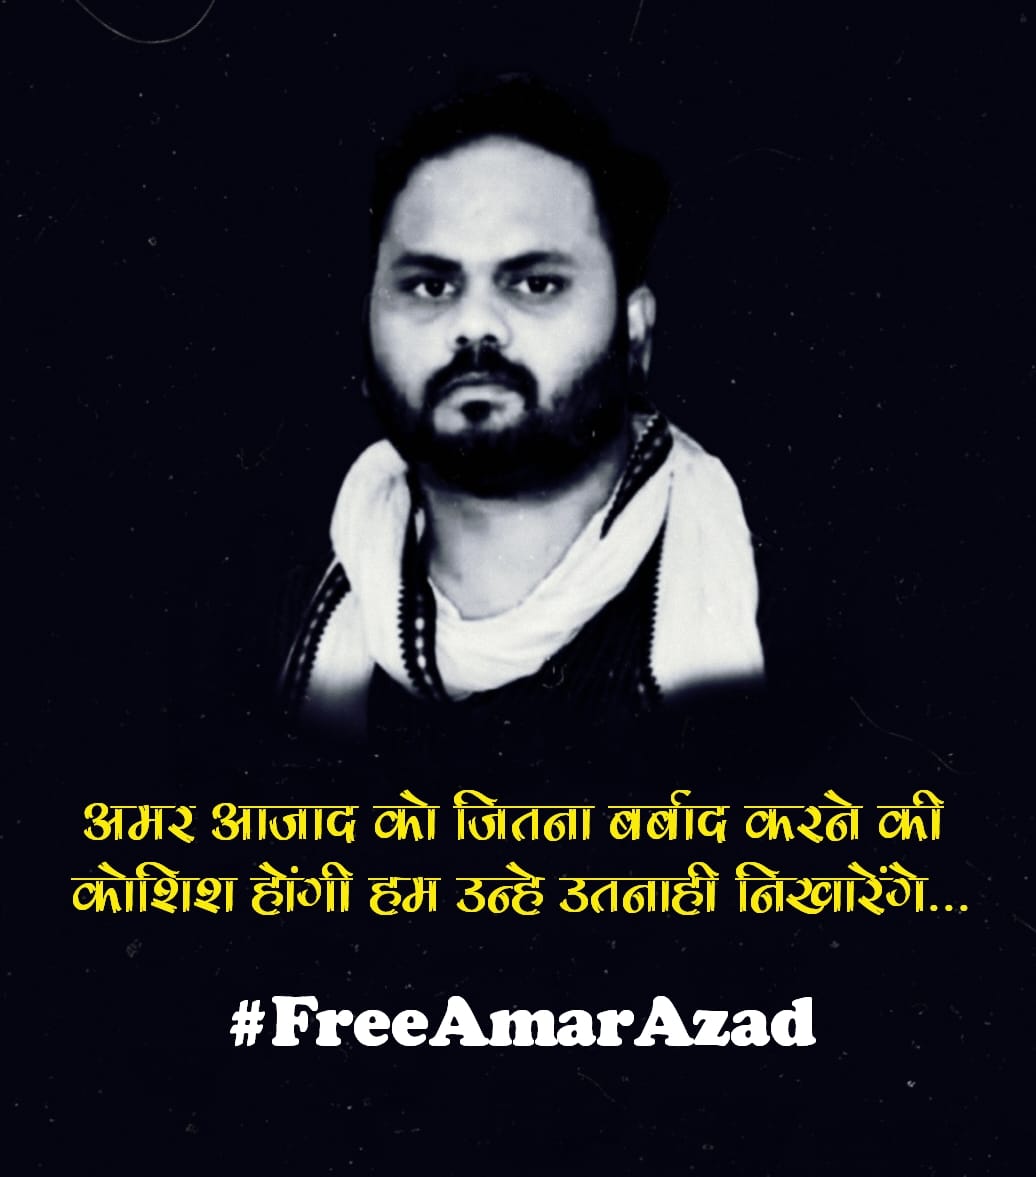 क्या स्वतंत्र भारत में दलित को अपना अधिकार मांगने का अधिकार नहीं है अगर है तो फिर जब को समाज में लिए आवाज उठाते हैं तो सरकार द्वारा उसे झुठा मुकदमा फंसा कर उसे जेल भेजता है जो कही ना कही सरकार की मंशा है कि दलित को आगे बढ़ने ना दे और उसे उसके अधिकार से वंचित रखे #FreeAmarazad